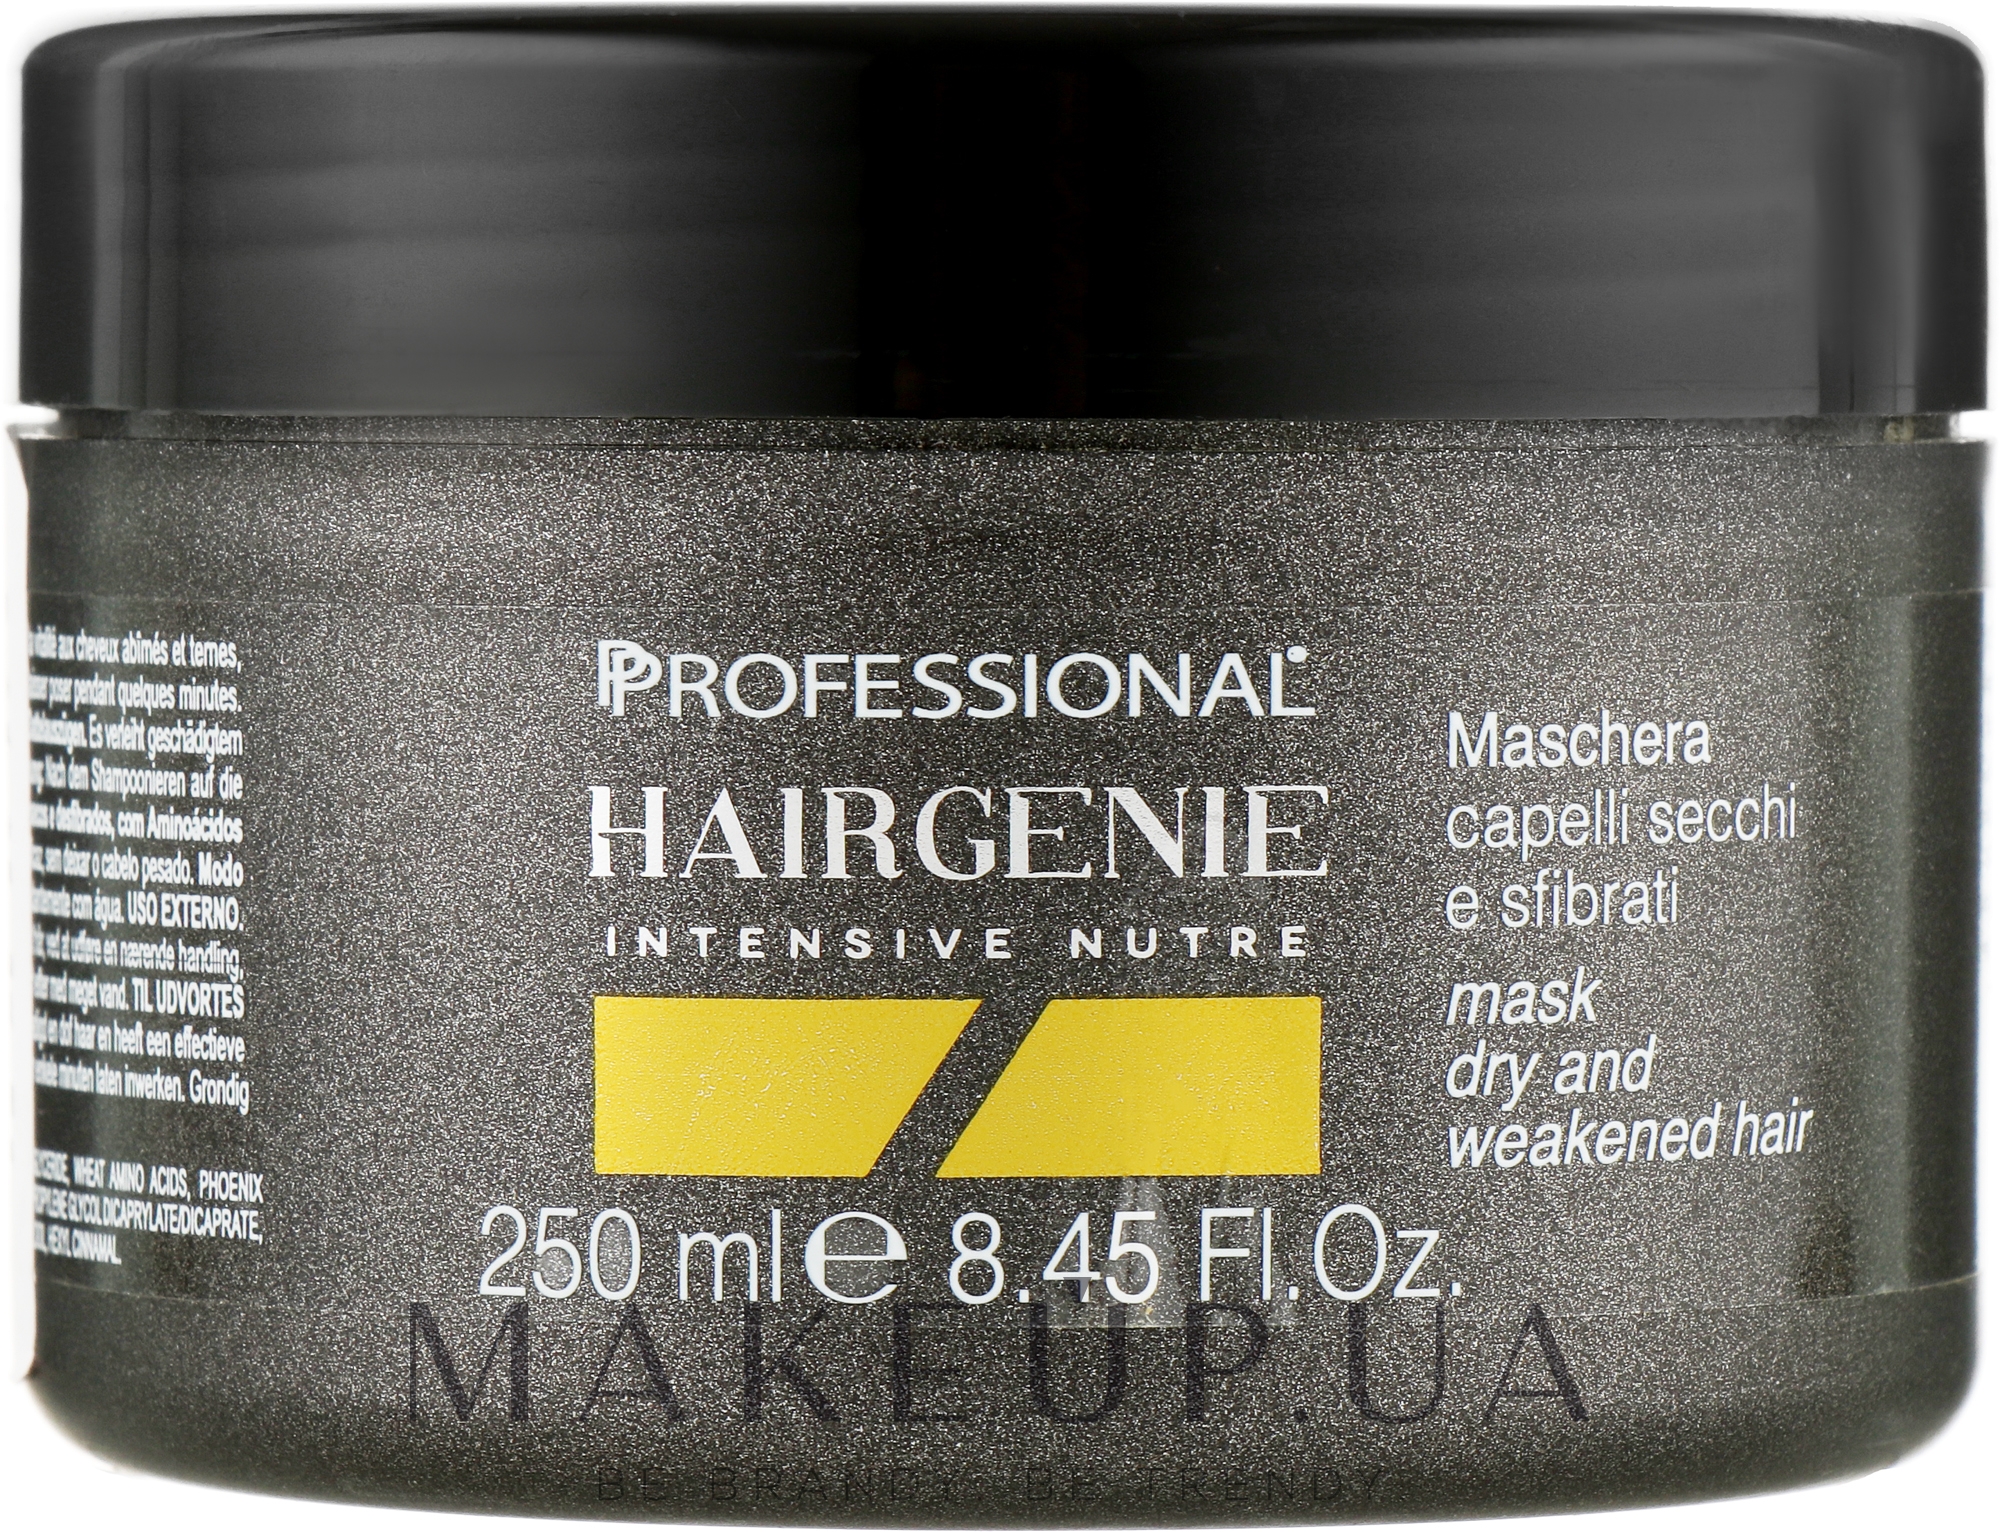 Маска для волосся "Інтенсивне живлення" - Professional Hairgenie Intensive Nutre Mask — фото 250ml